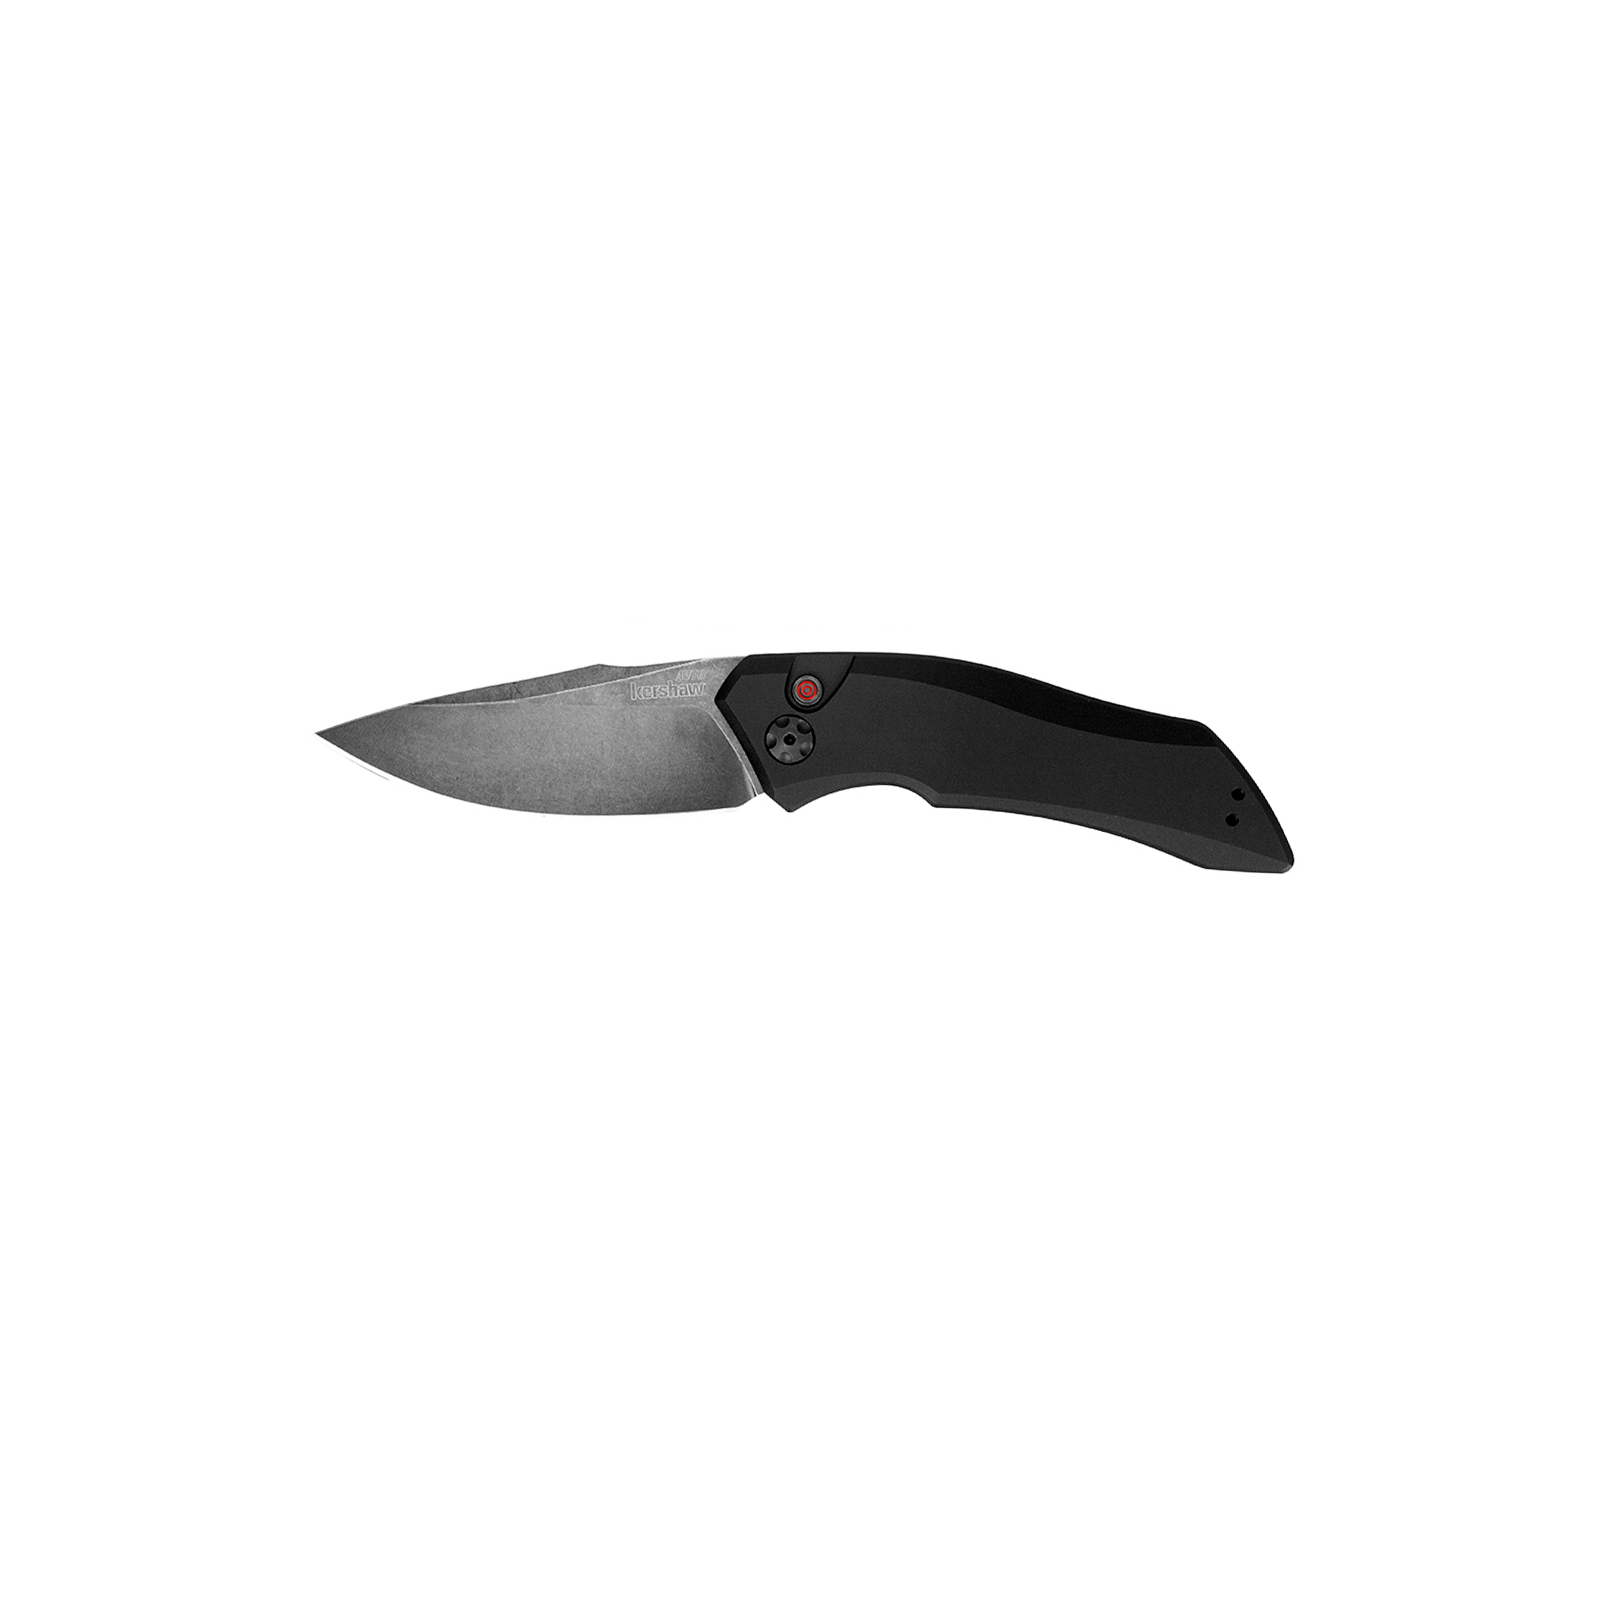 Нож Kershaw Launch 1 черный (7100BW)